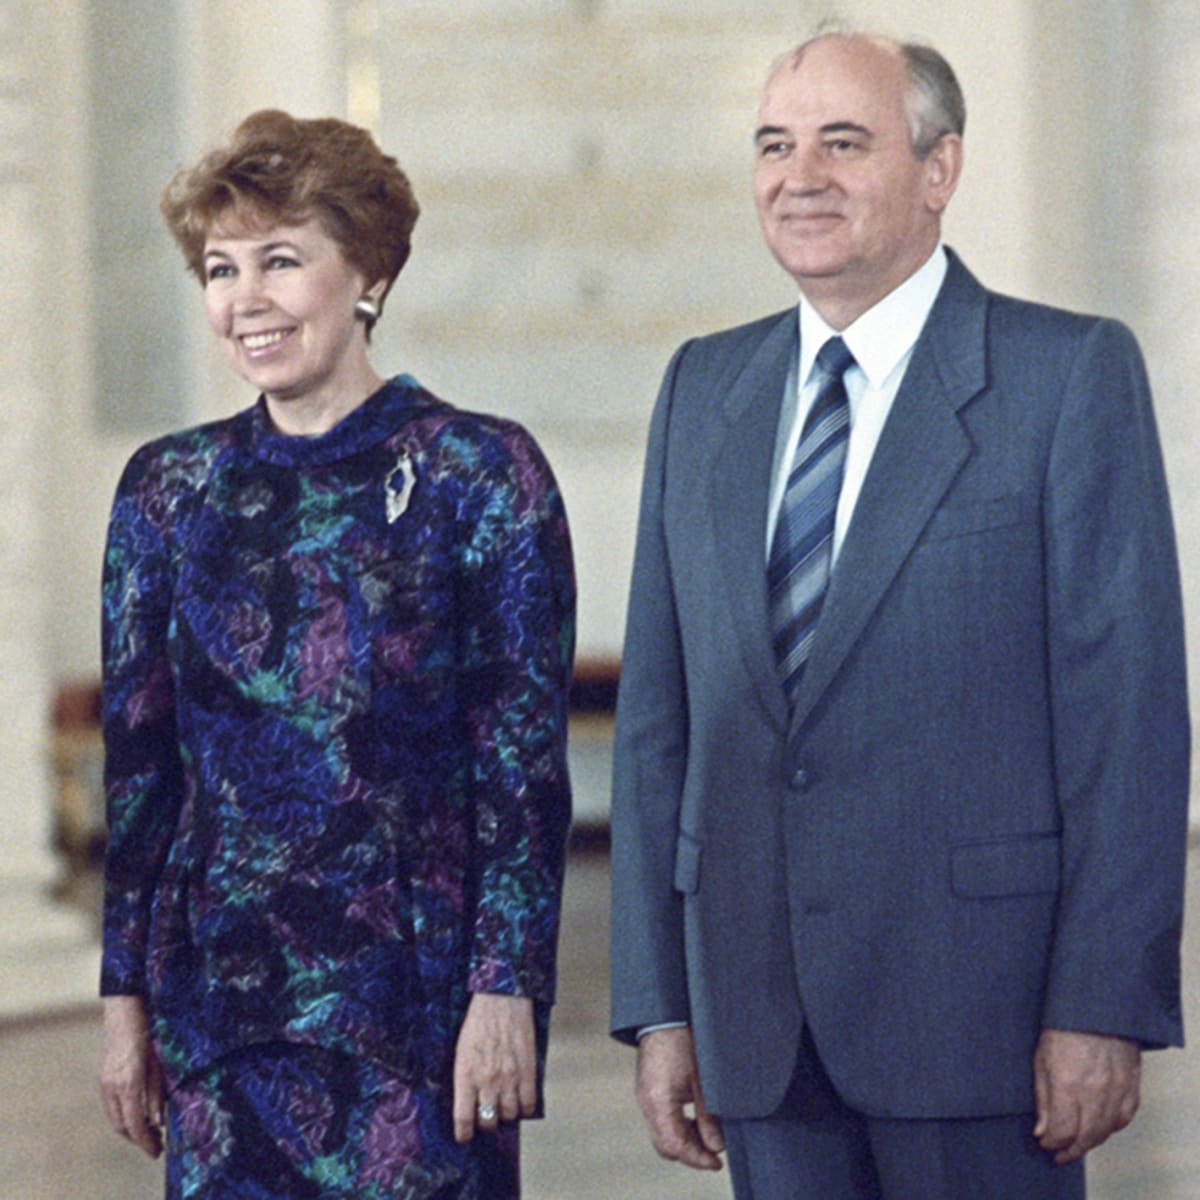 Za Michailem Gorbačovem, který s manželkou Raisou a dalšími členy rodiny pobýval na dovolené na Krymu, dorazila nikým nezvaná delegace. Požadovala vyhlášení výjimečného stavu. To Gorbačov jednoznačně odmítl.